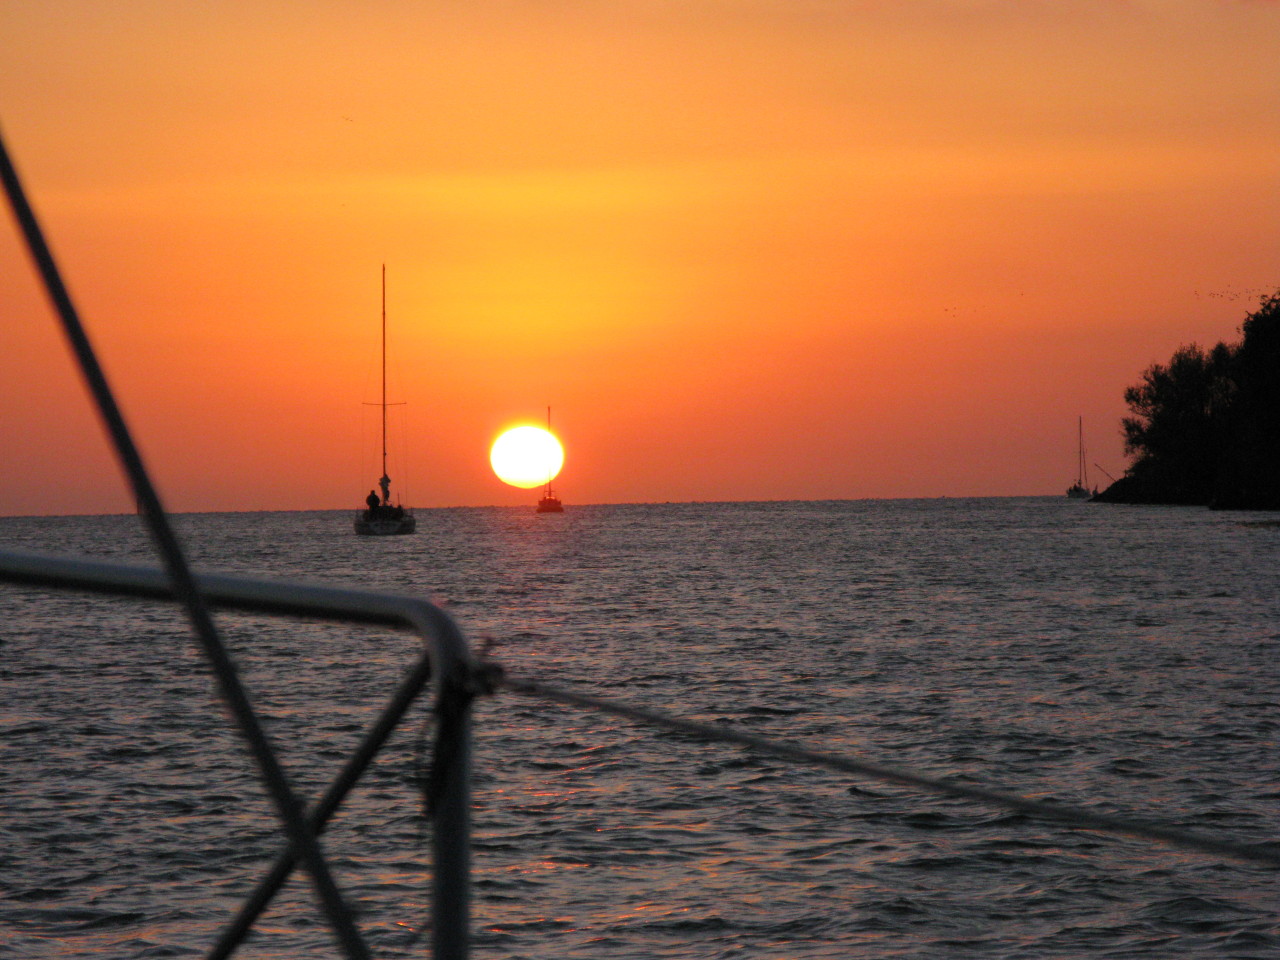 navaphoto:
“sailing & sun
”